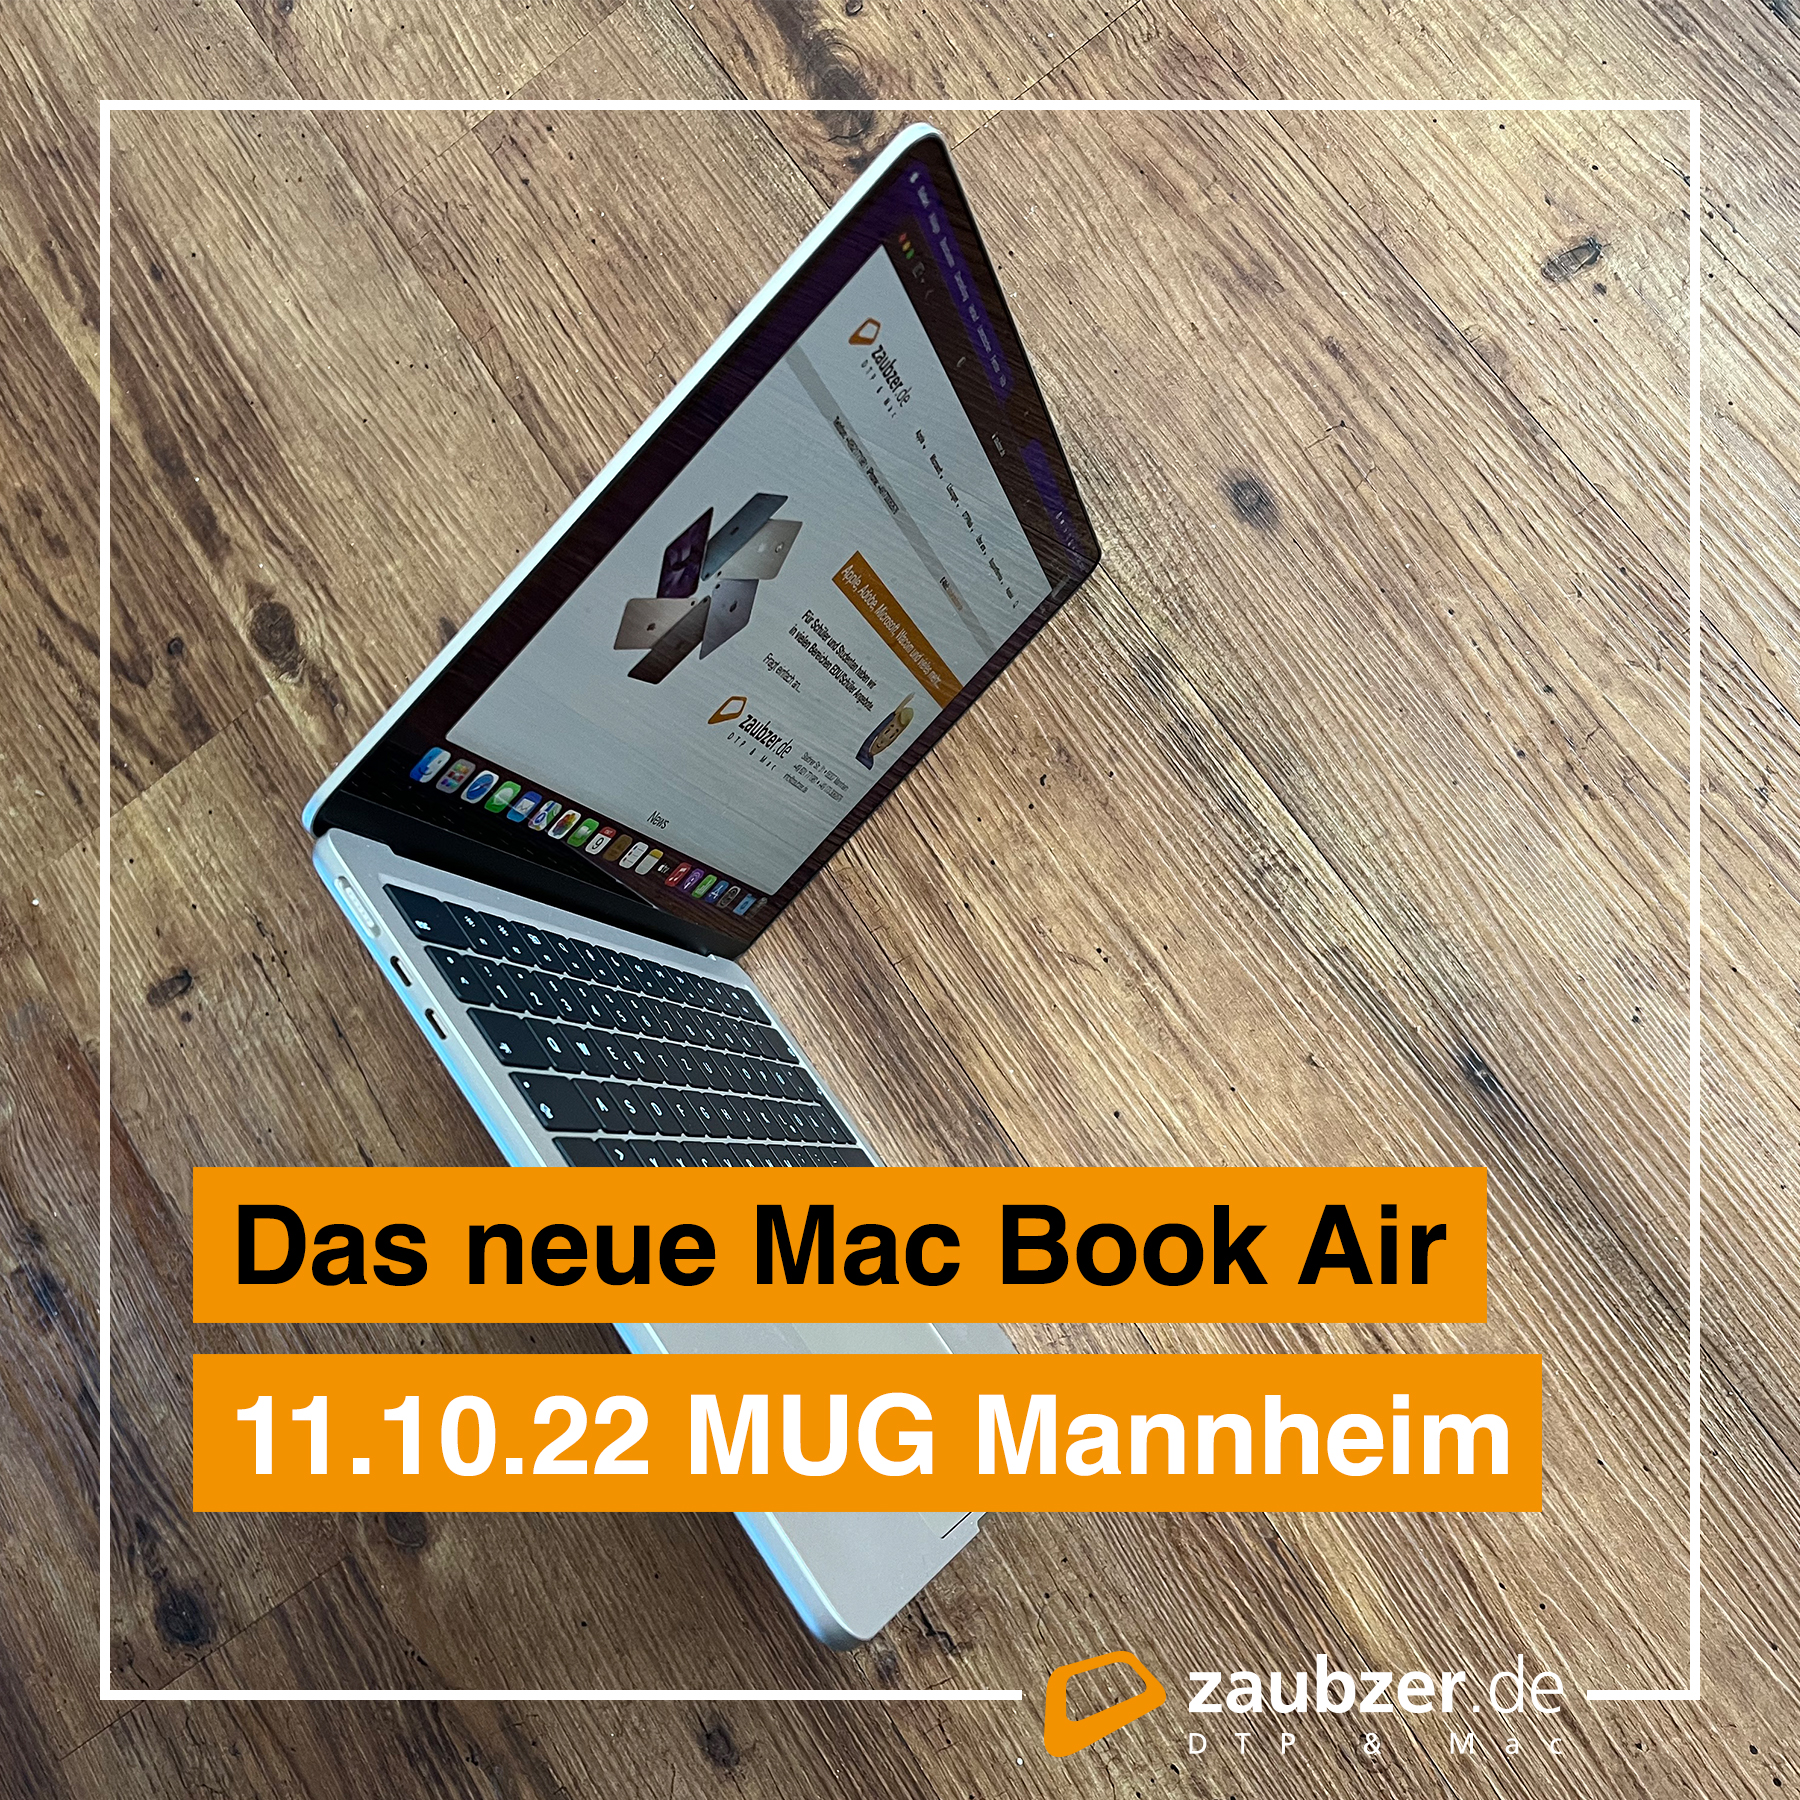 zaubzer.de zeigt das neuen MacBook Air live.